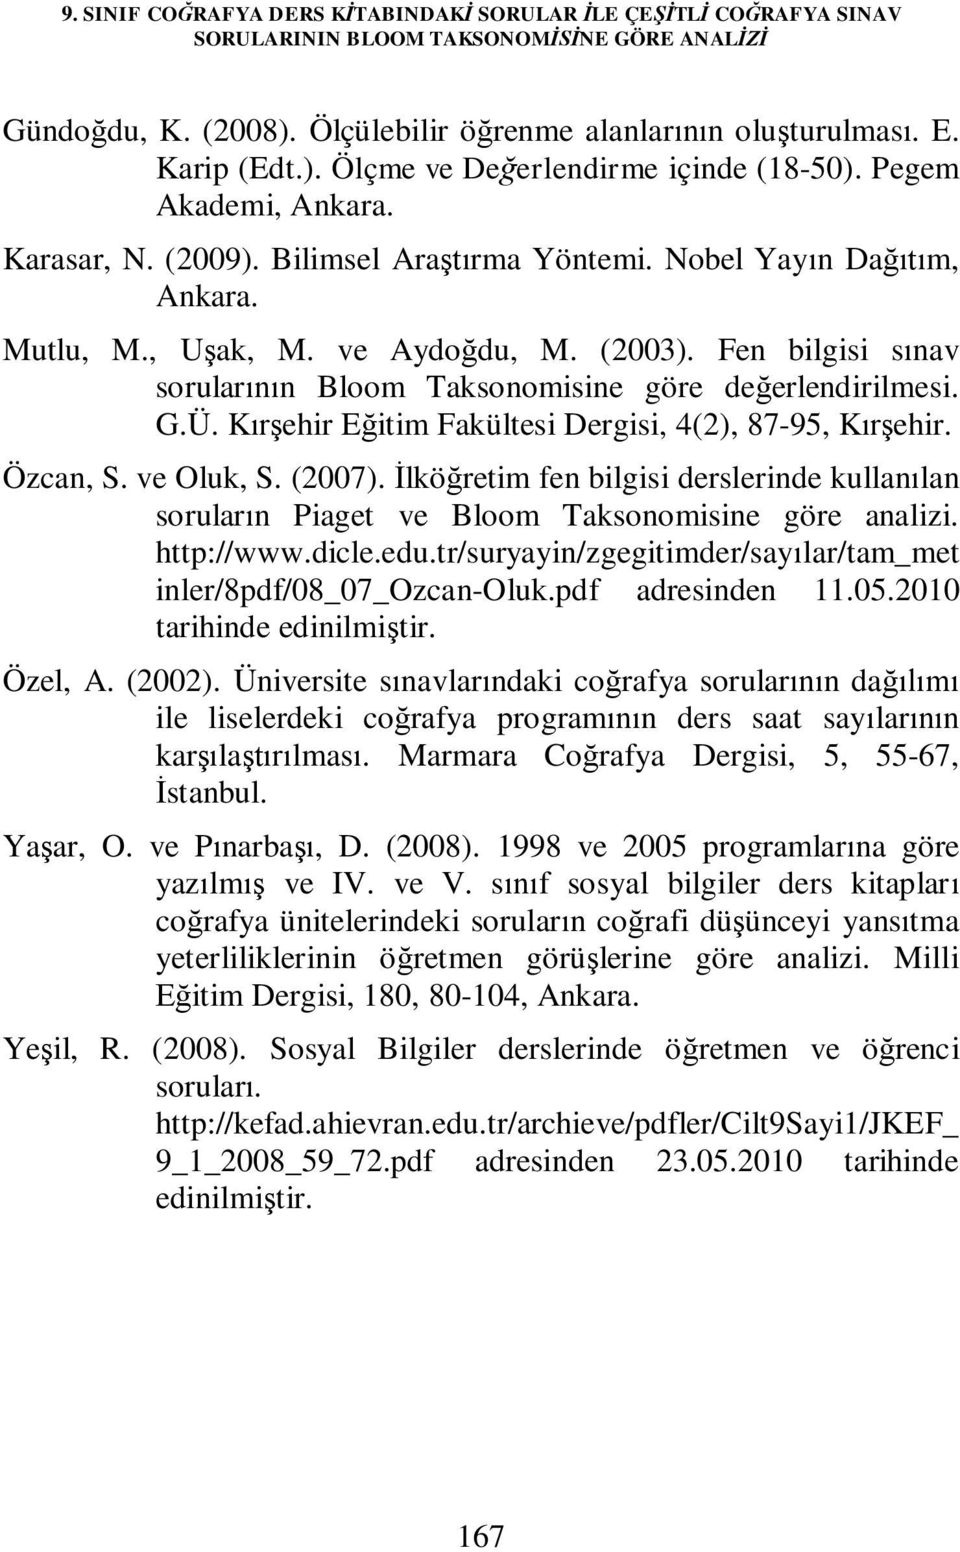 Fen bilgisi sınav sorularının Bloom Taksonomisine göre değerlendirilmesi. G.Ü. Kırşehir Eğitim Fakültesi Dergisi, 4(2), 87-95, Kırşehir. Özcan, S. ve Oluk, S. (2007).